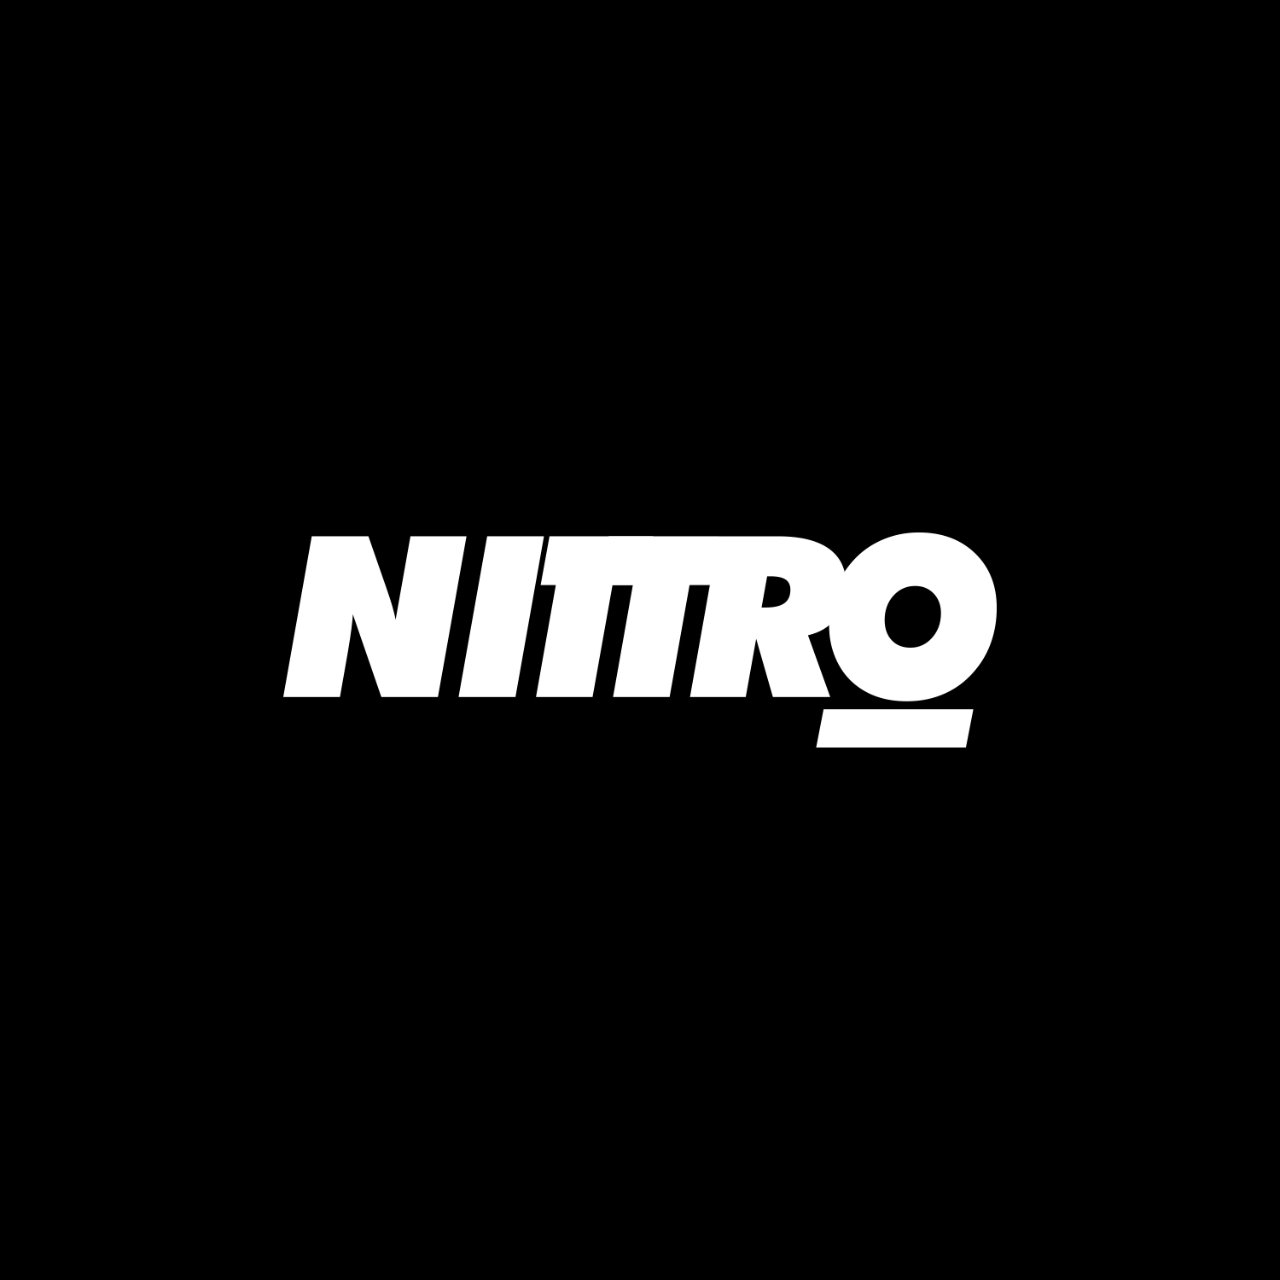 Nittro